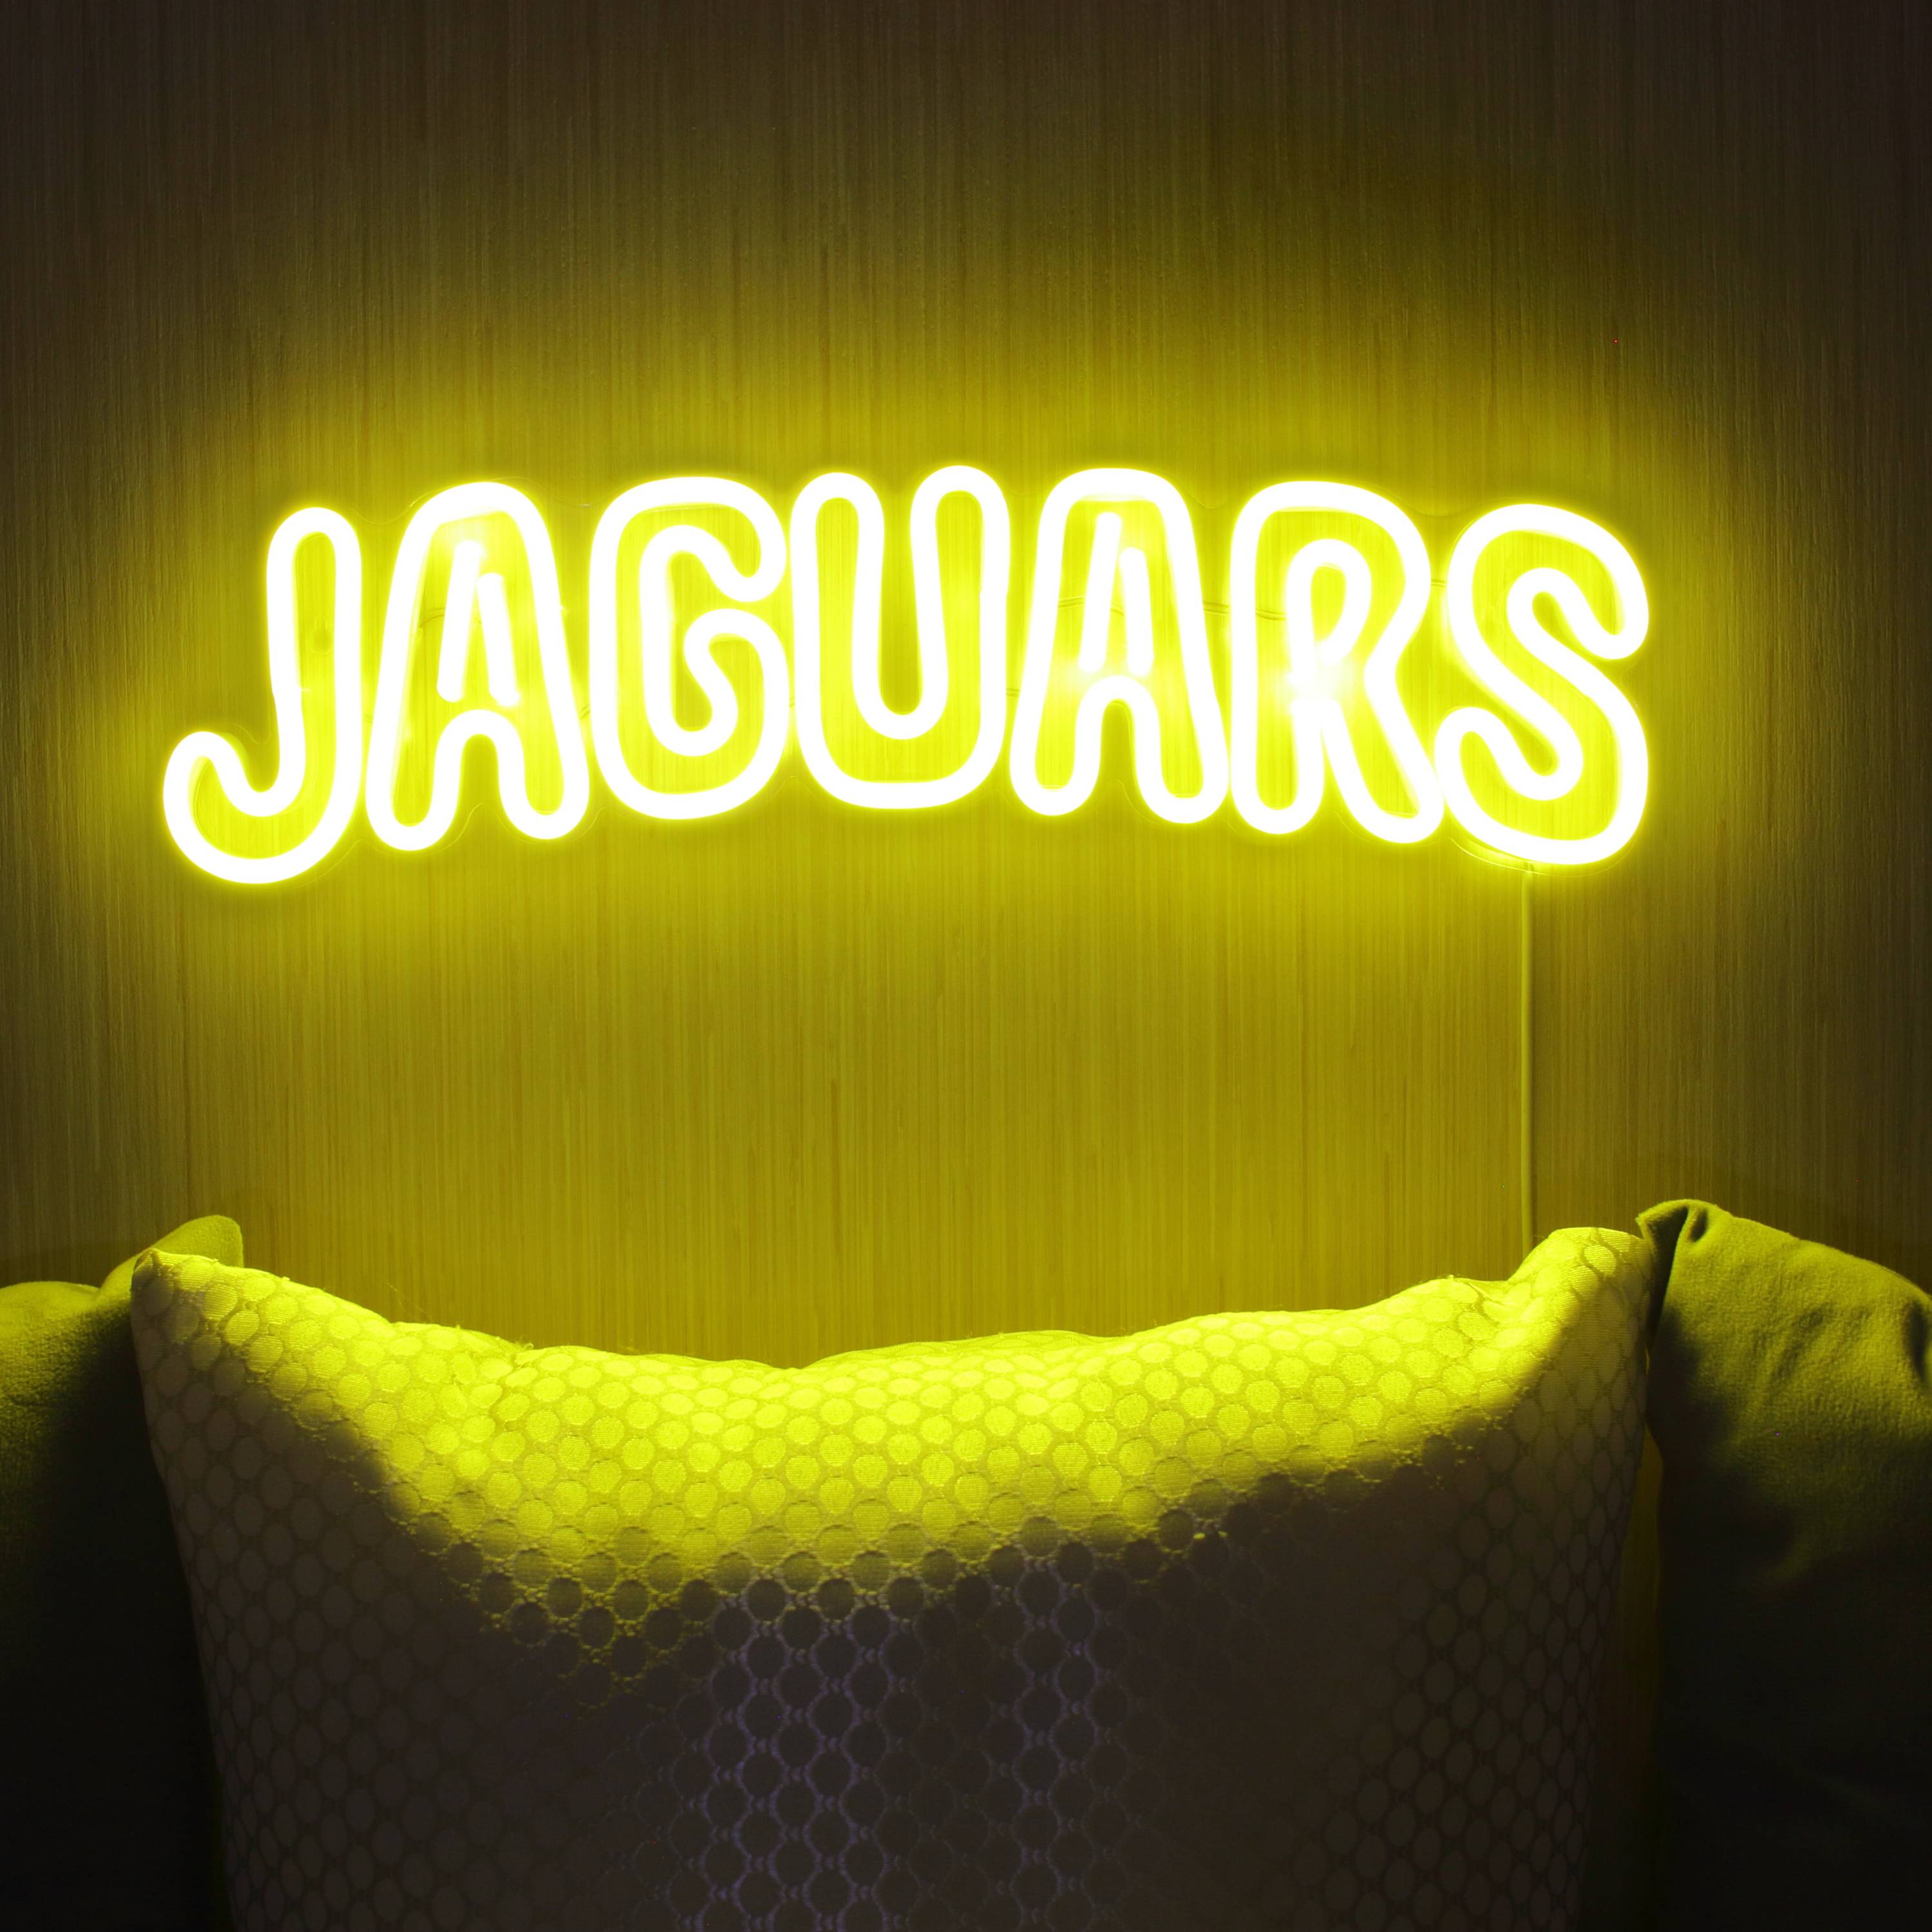 NFL JAGUARS Large Flex Neon LED Sign